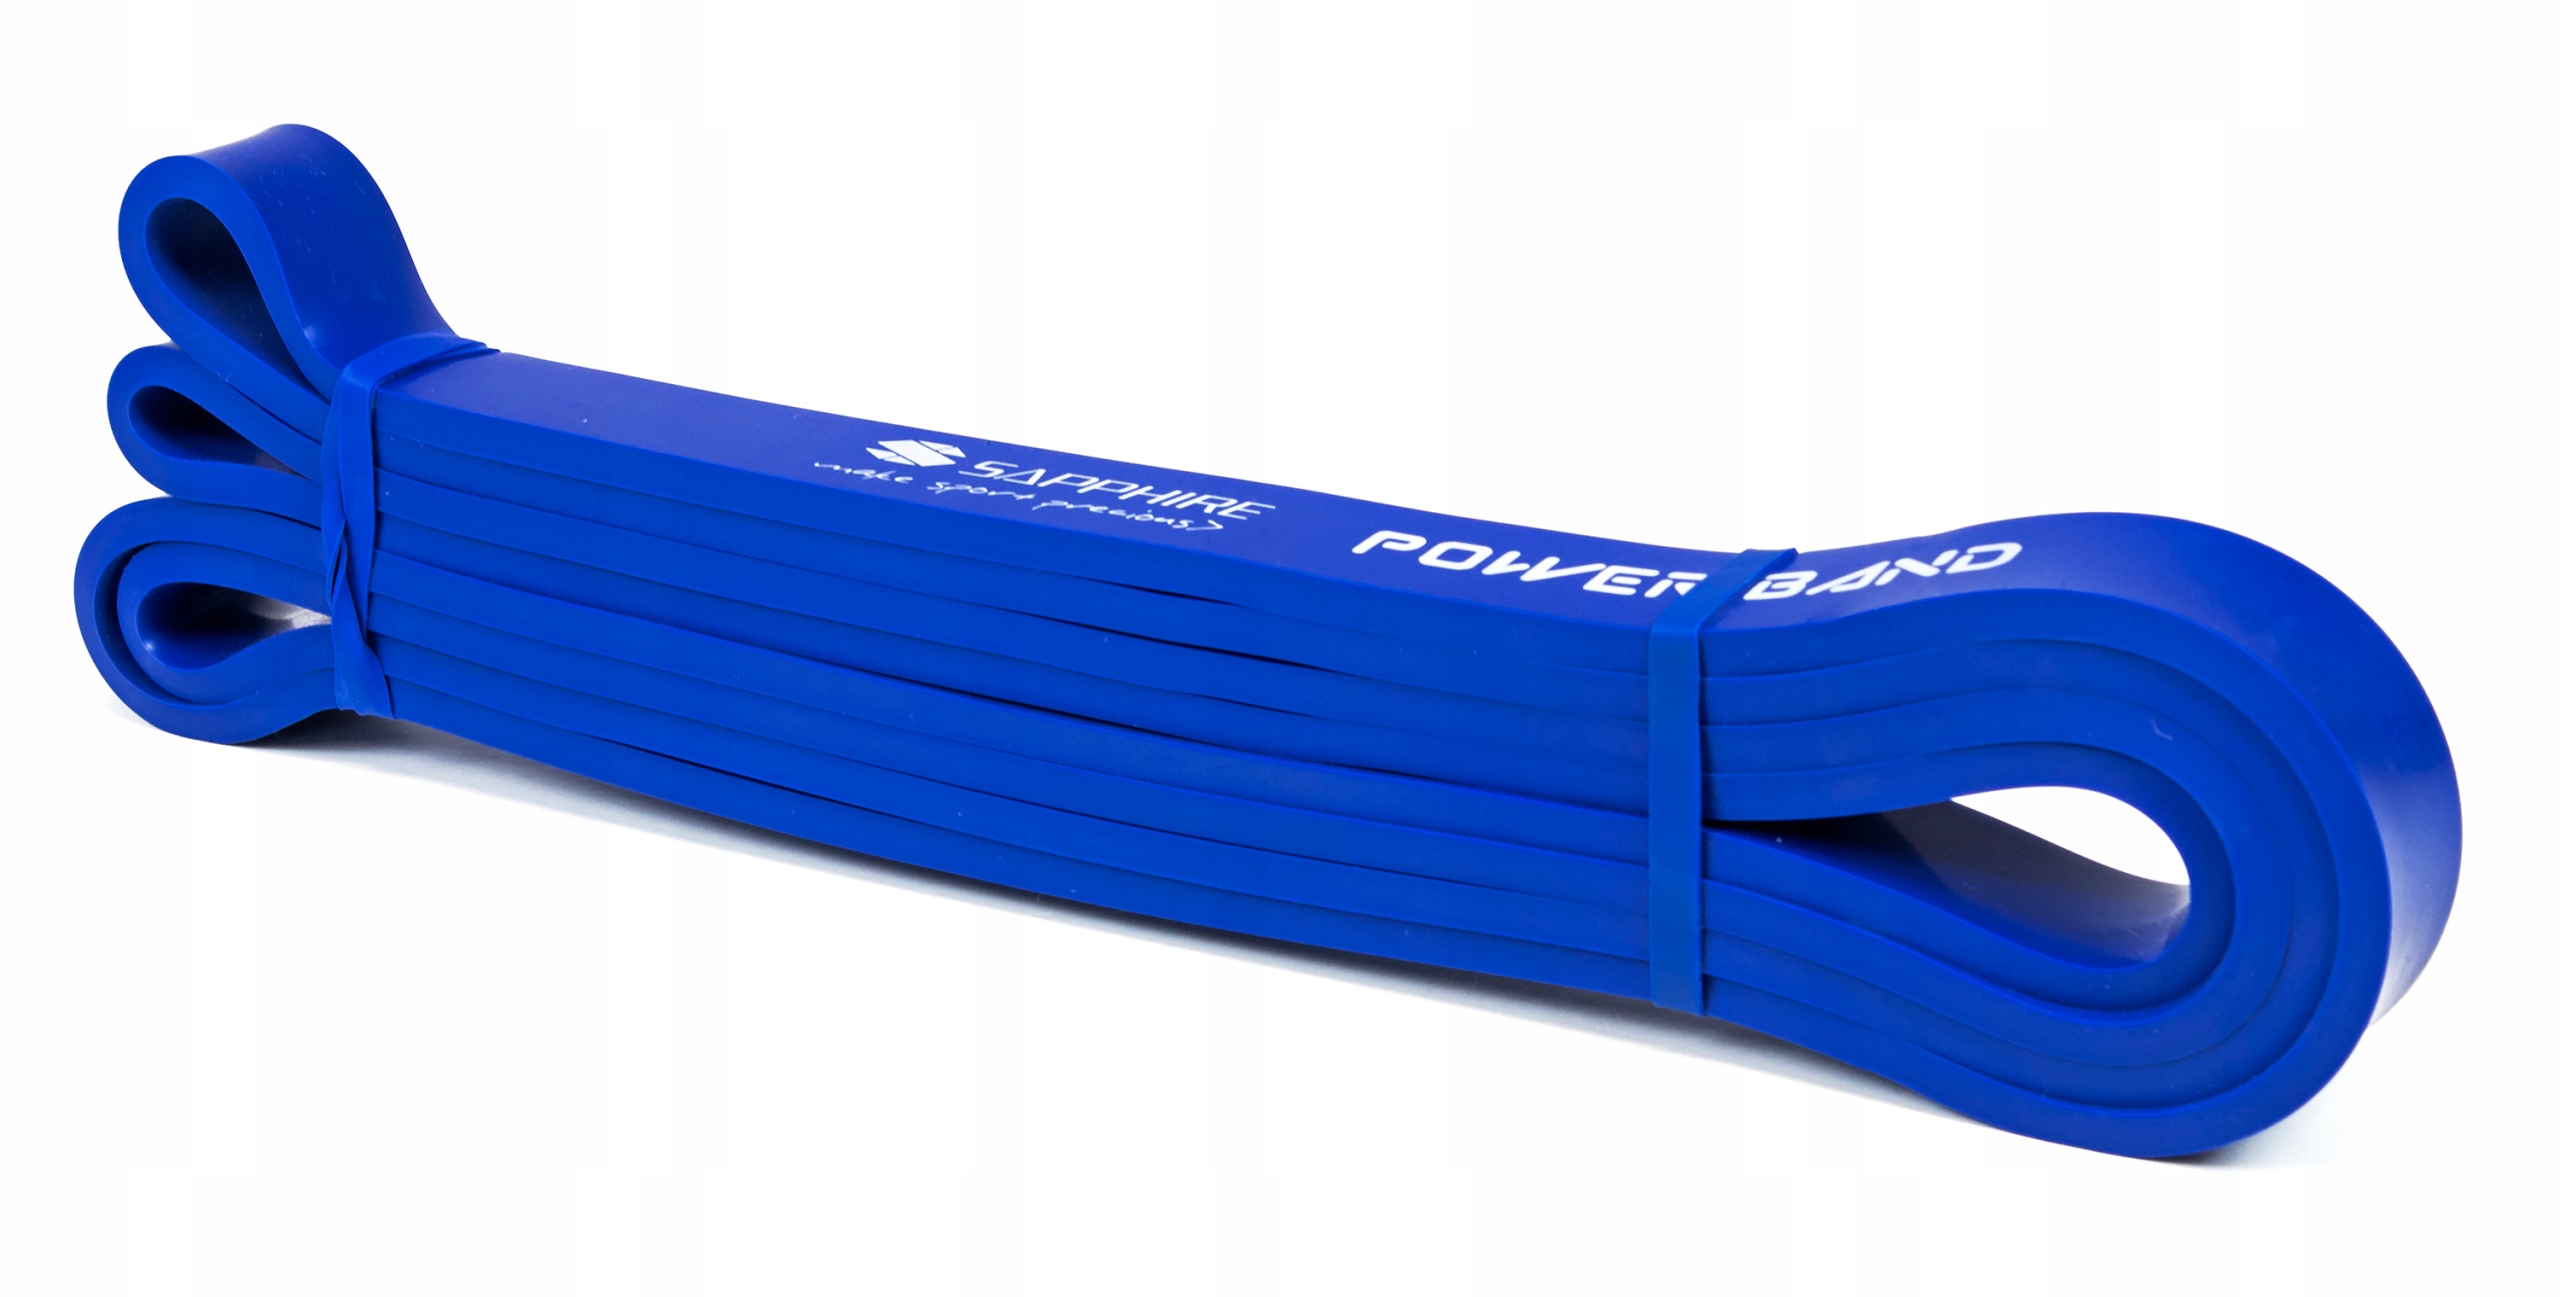 GUMA oporowa POWER BAND taśma DO ĆWICZEŃ 11-26 KG Model SG2080_19_BLUE